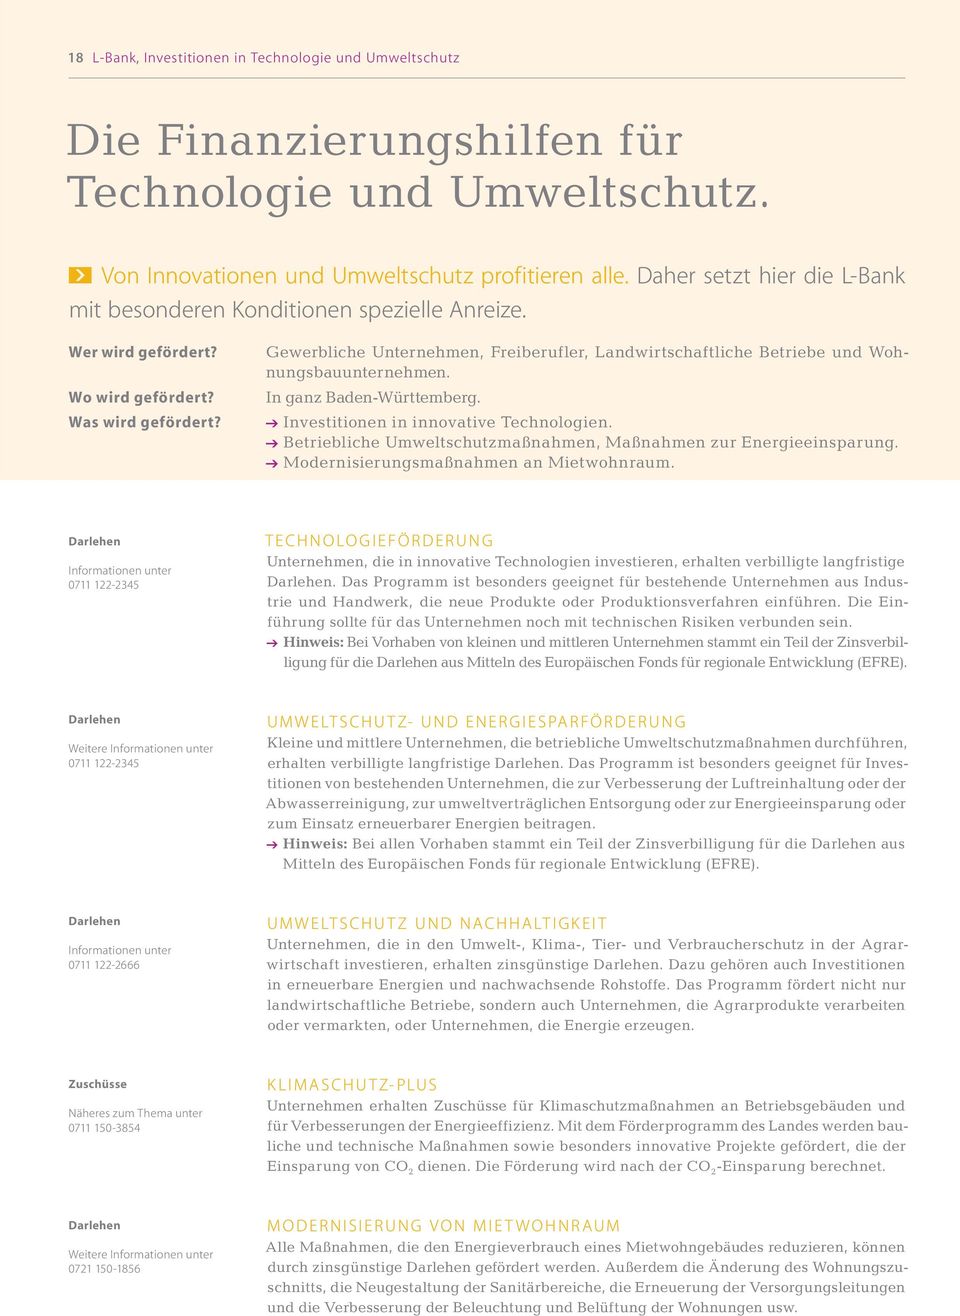 Gewerbliche Unternehmen, Freiberufler, Landwirtschaftliche Betriebe und Wohnungsbauunternehmen. In ganz Baden-Württemberg. @ Investitionen in innovative Technologien.